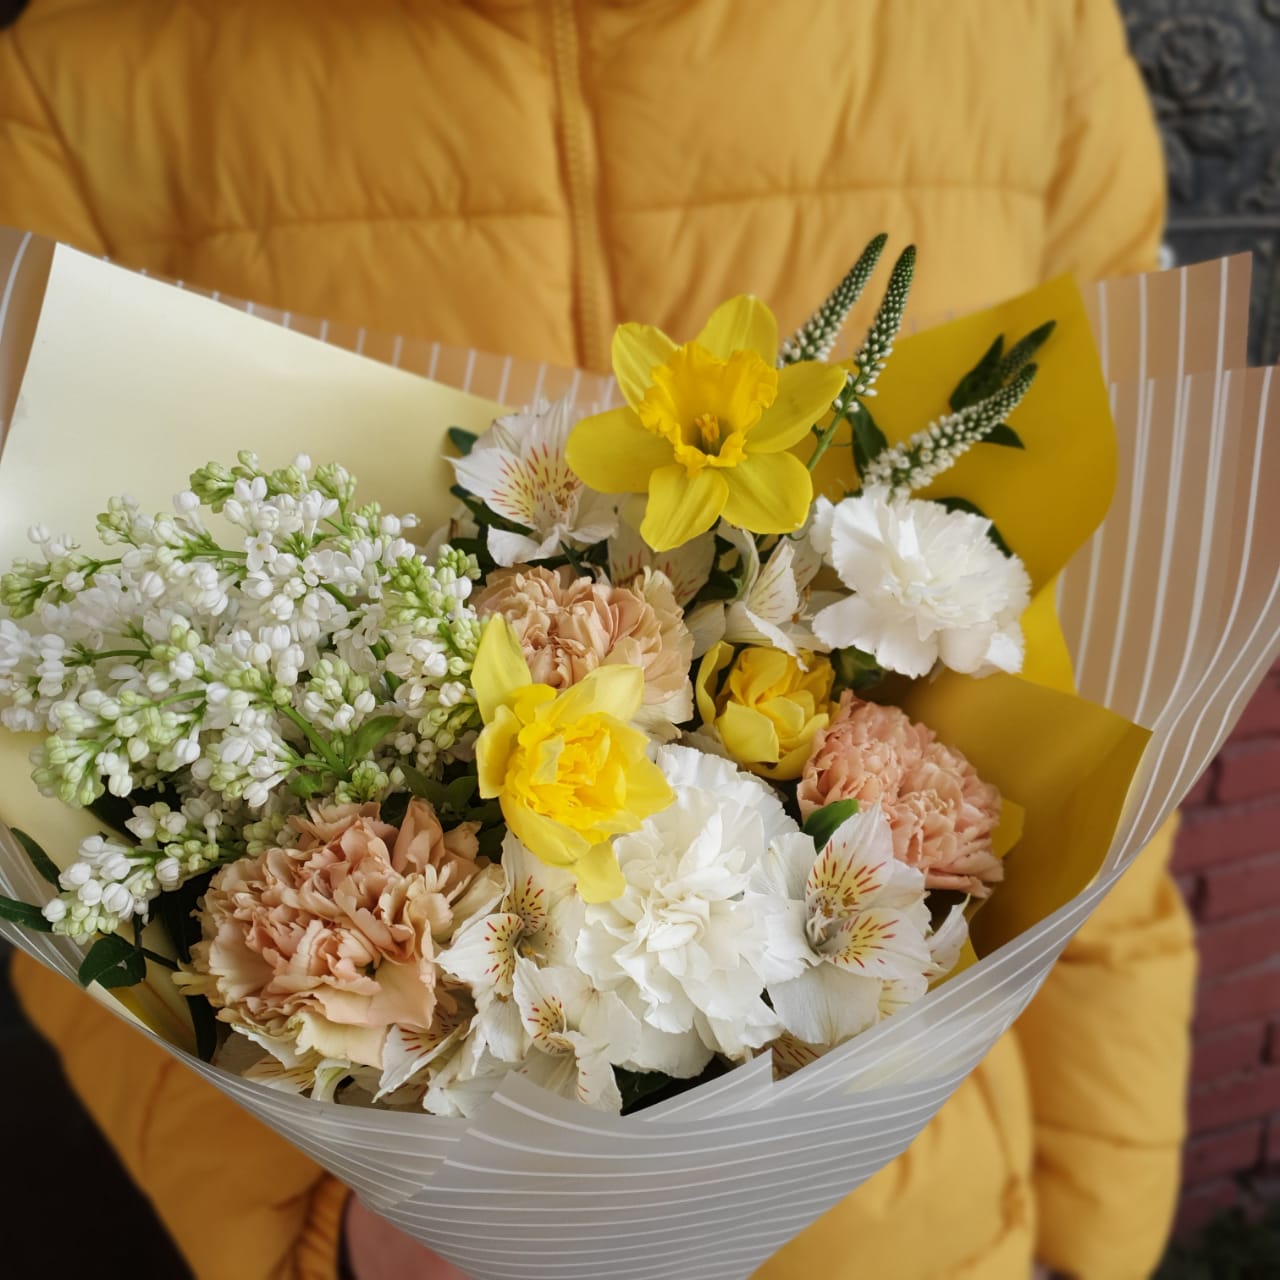 Купить букет / цветы Никити в Москве с доставкой по отличной цене